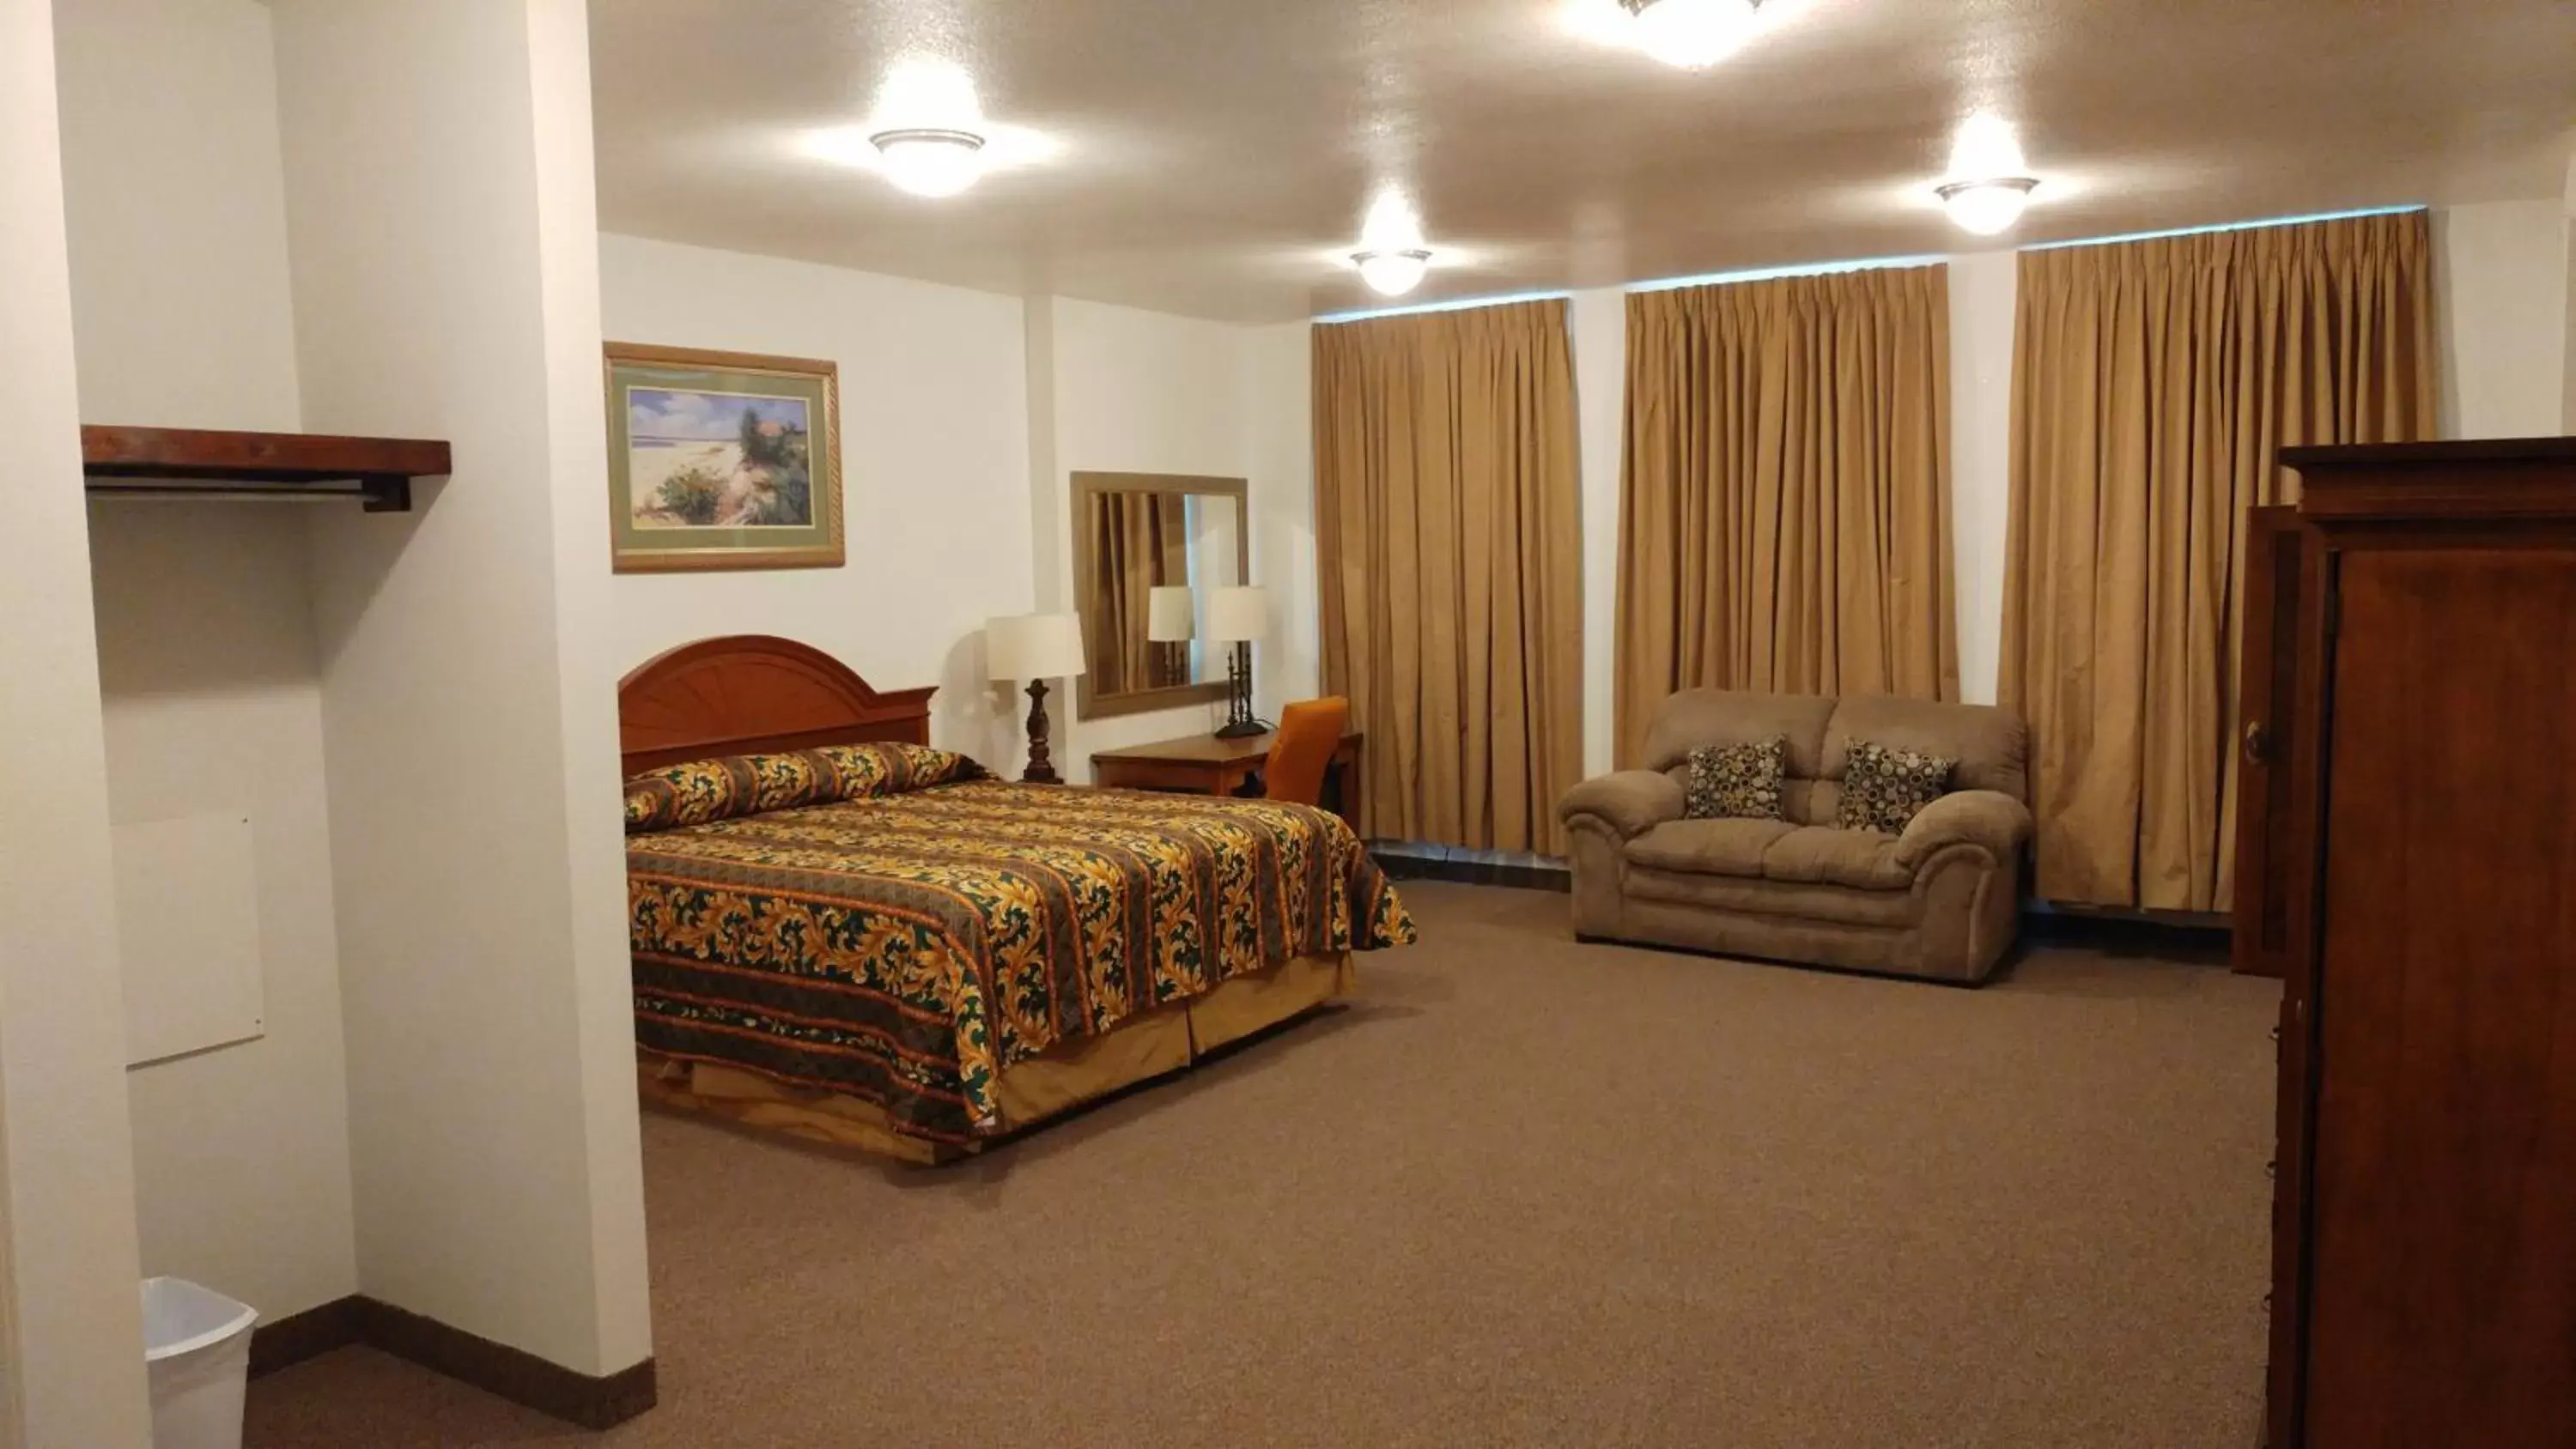 Bedroom in Country Regency Inn & Suites